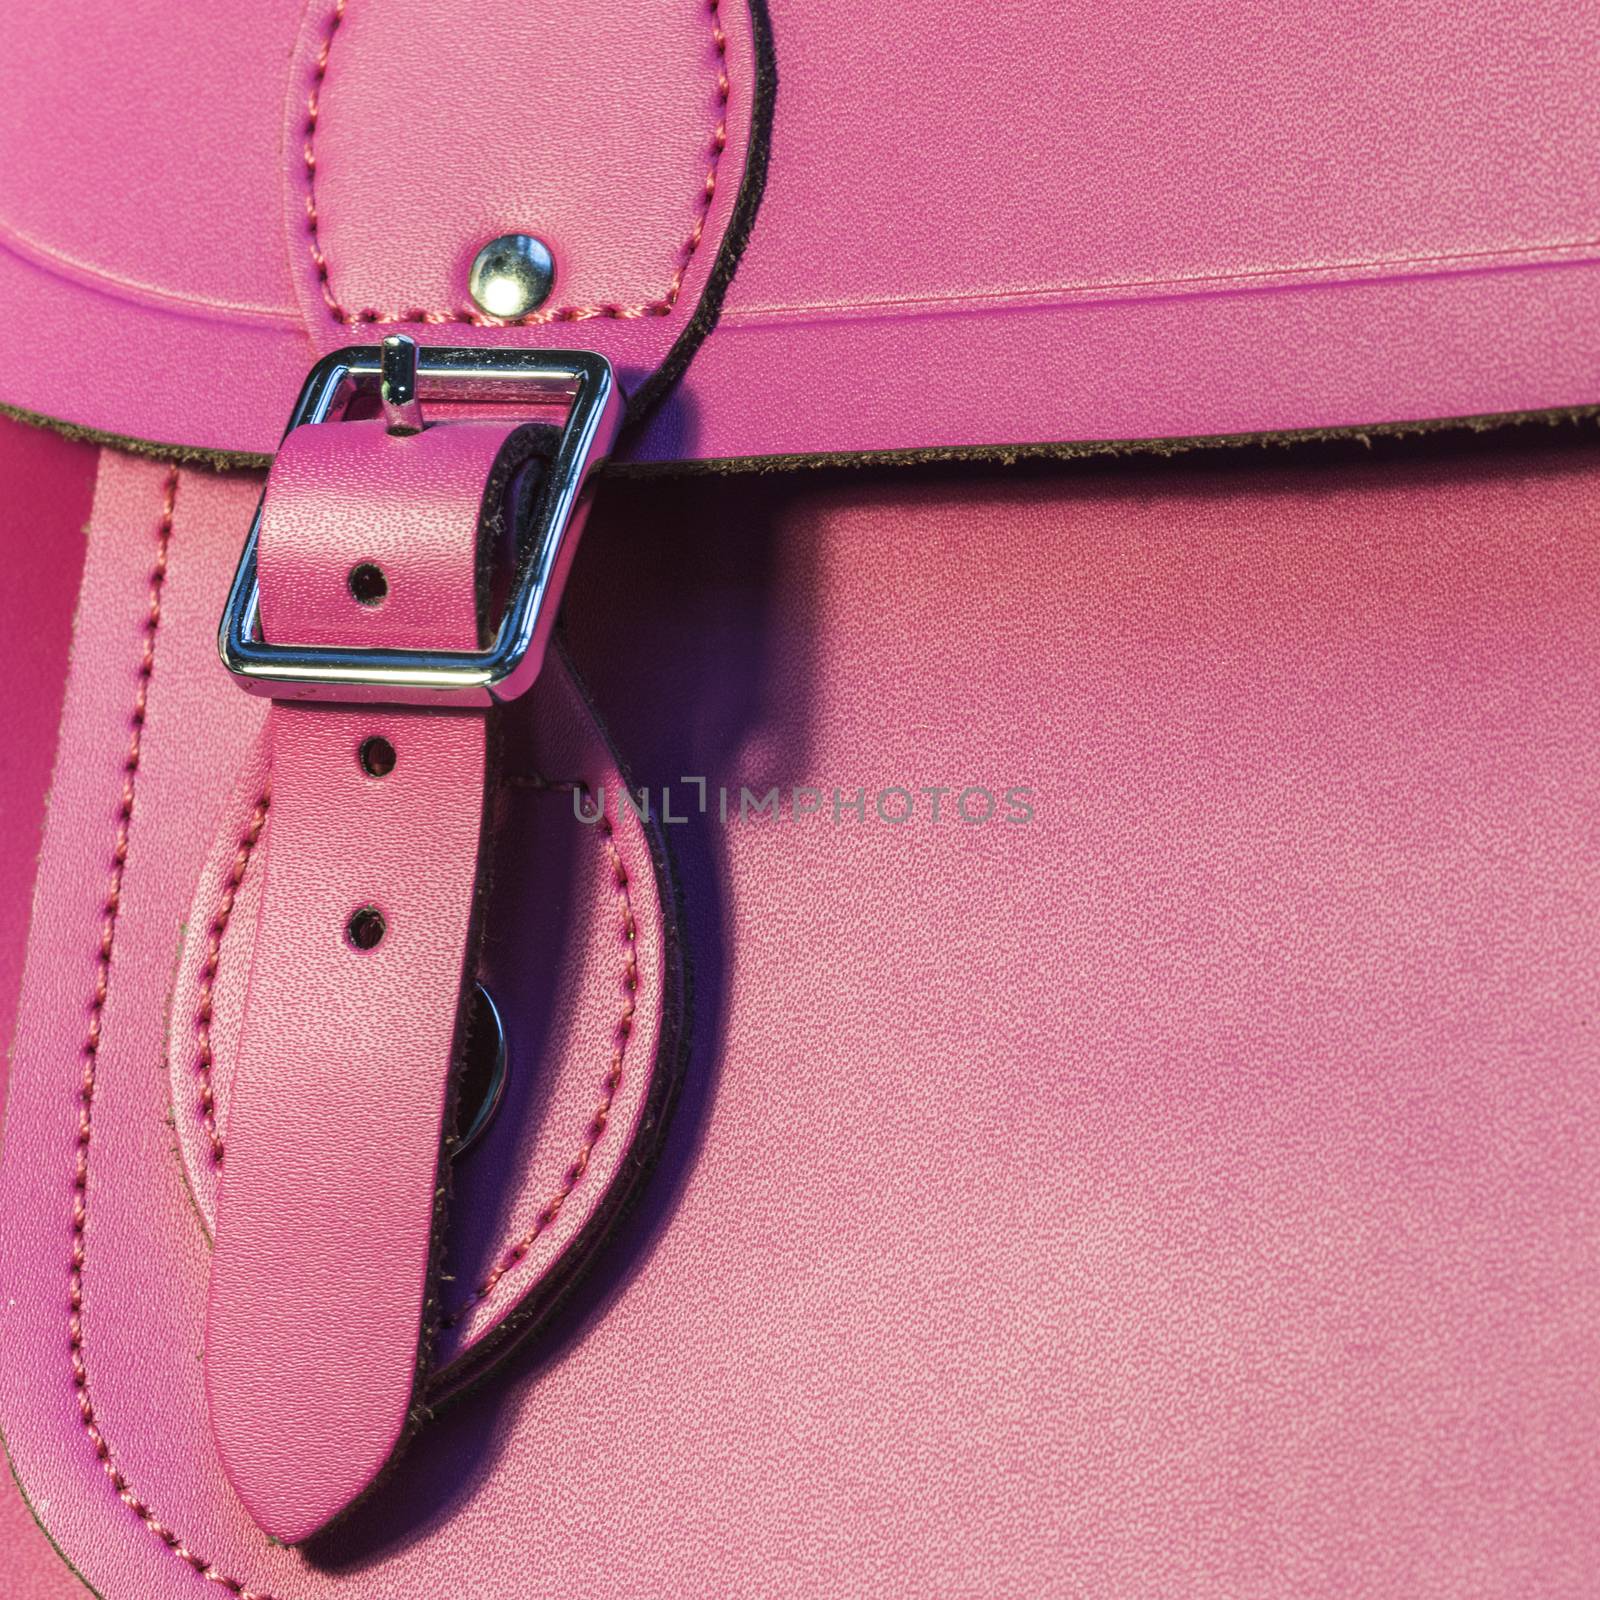 Pink leather bag closeup